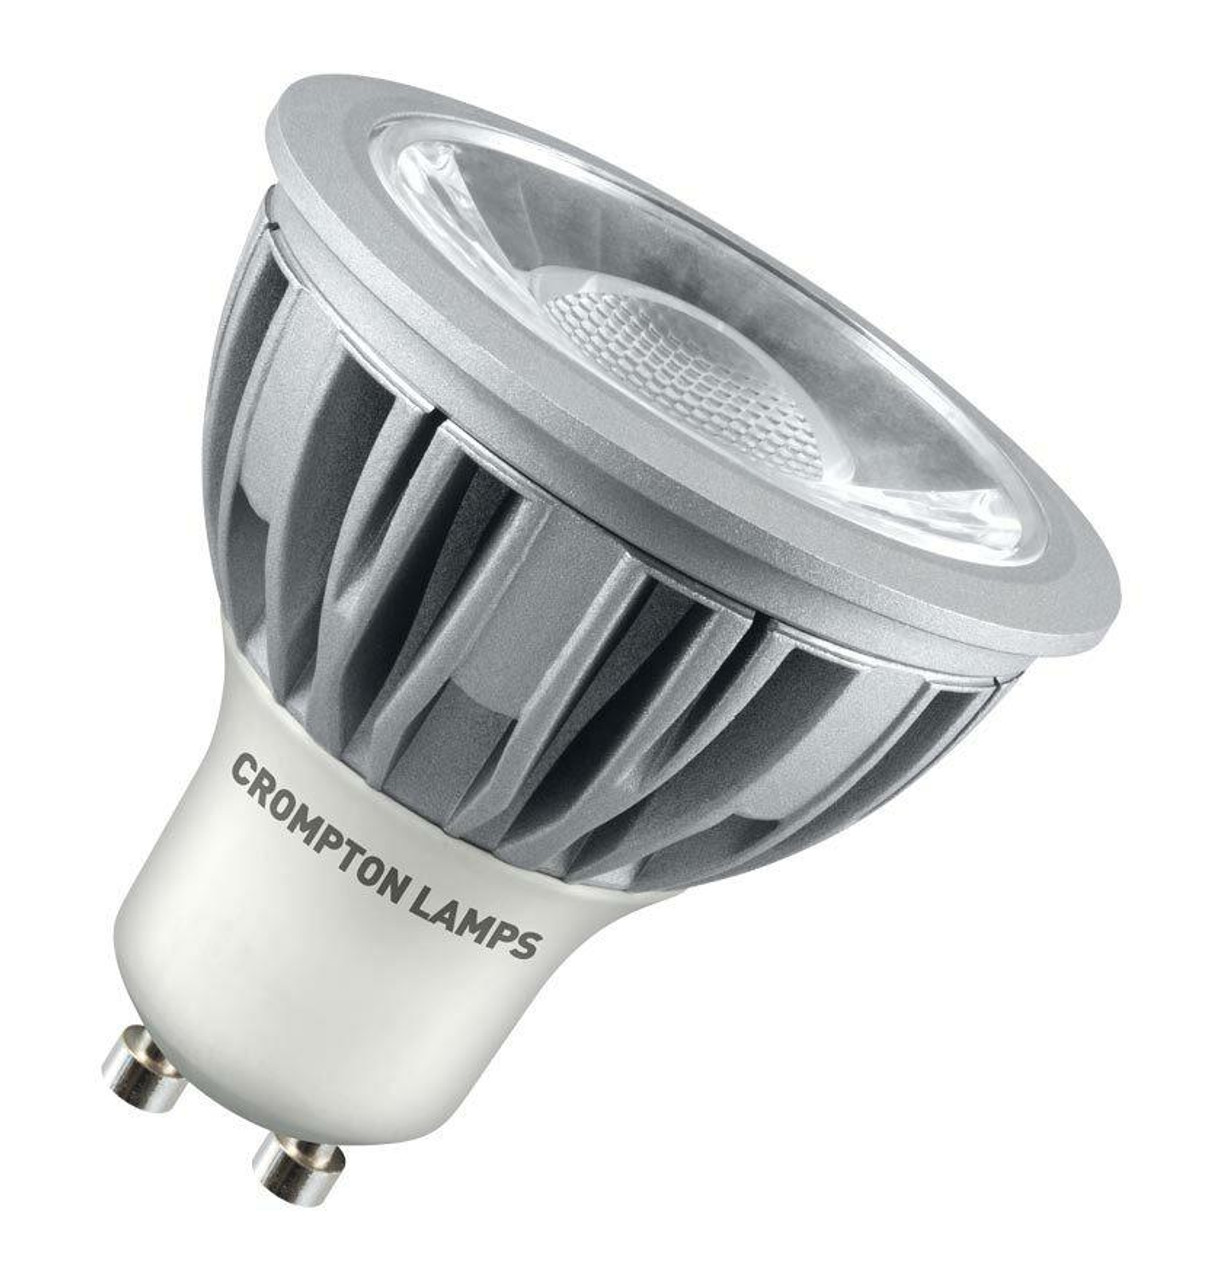 Crompton Lamps LED GU10 Bulb 5W Warm White 45°